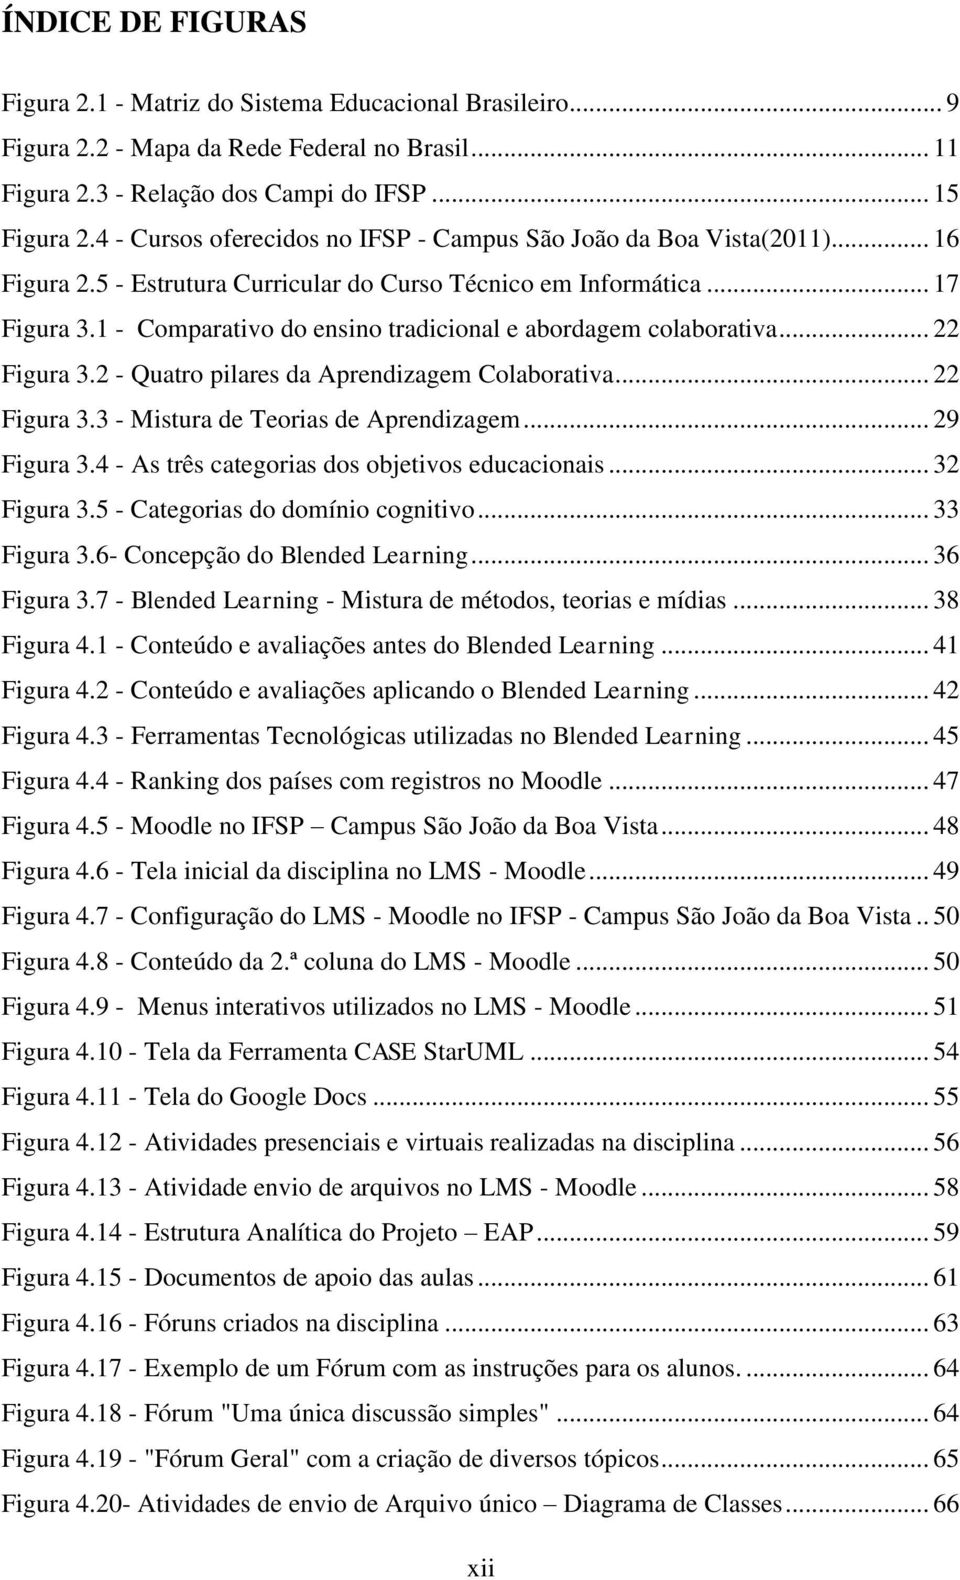 1 - Comparativo do ensino tradicional e abordagem colaborativa... 22 Figura 3.2 - Quatro pilares da Aprendizagem Colaborativa... 22 Figura 3.3 - Mistura de Teorias de Aprendizagem... 29 Figura 3.